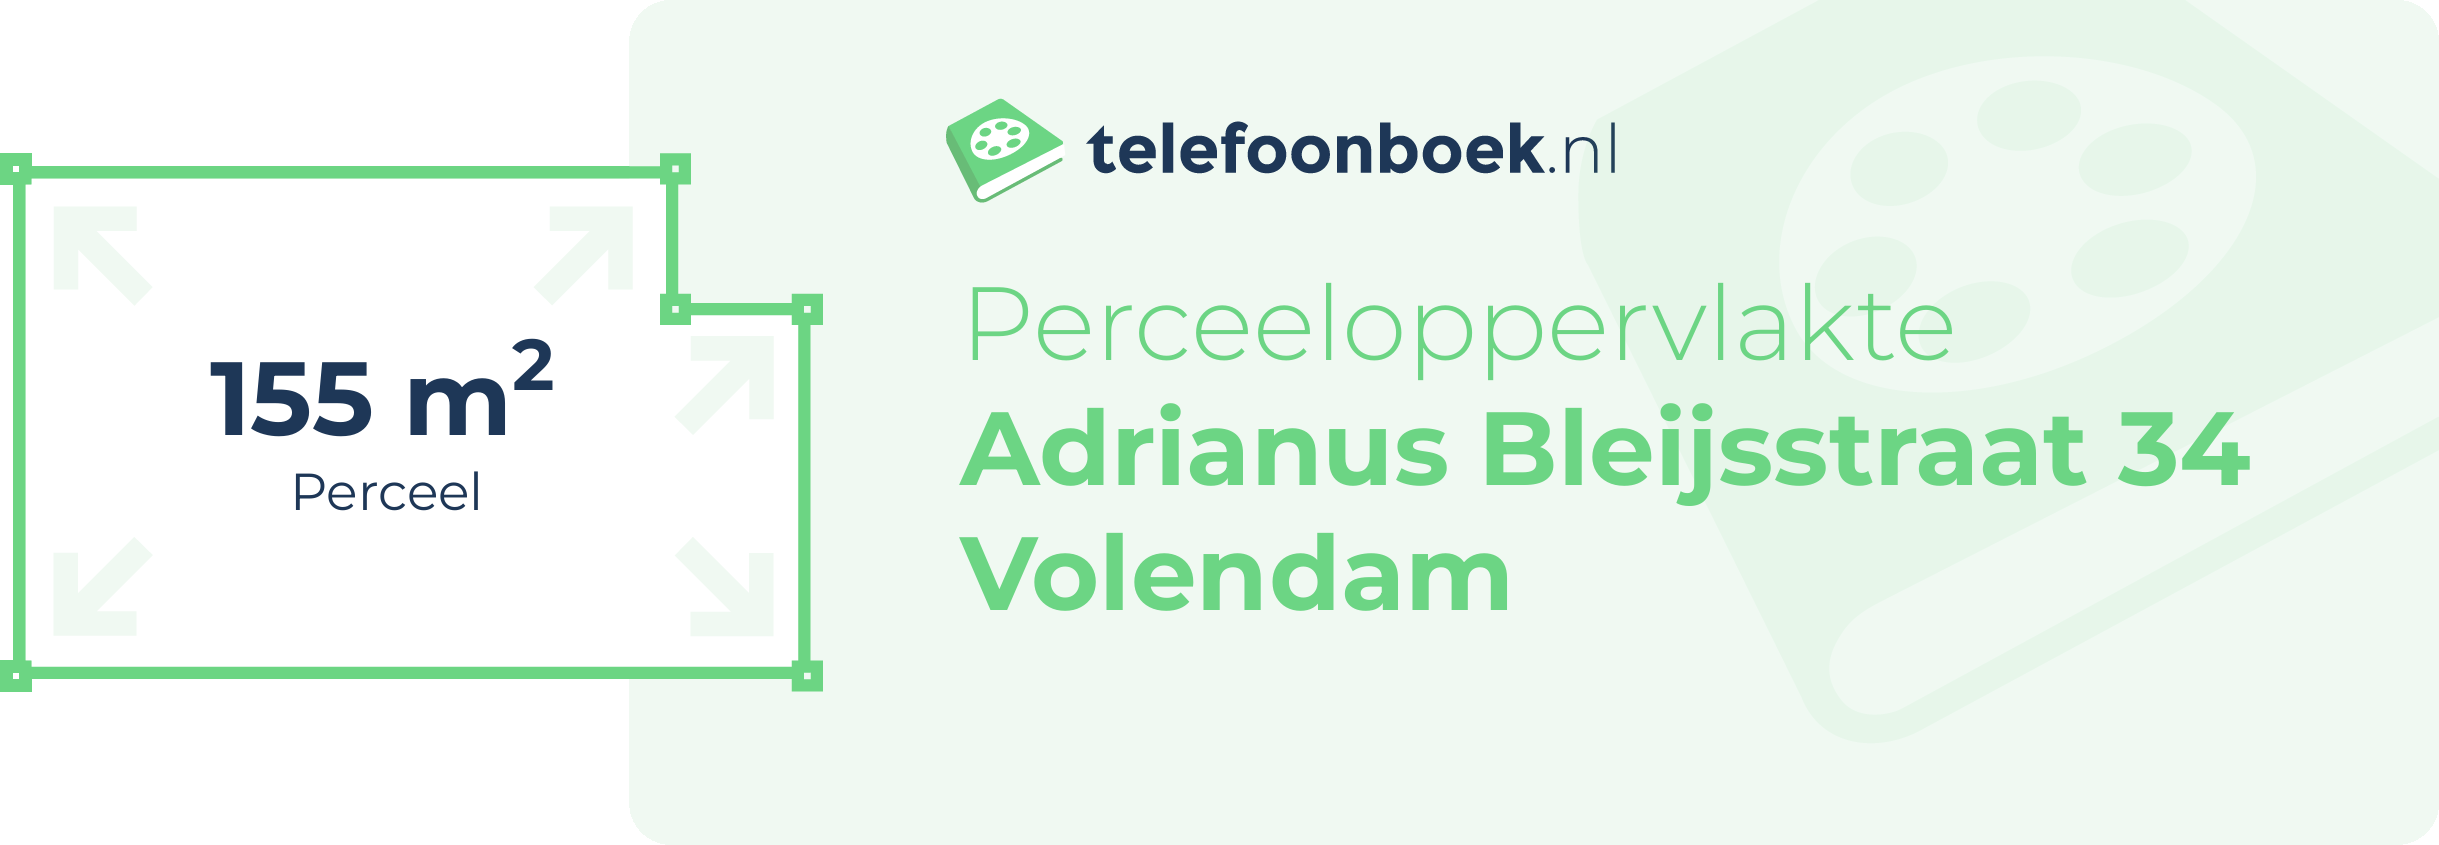 Perceeloppervlakte Adrianus Bleijsstraat 34 Volendam